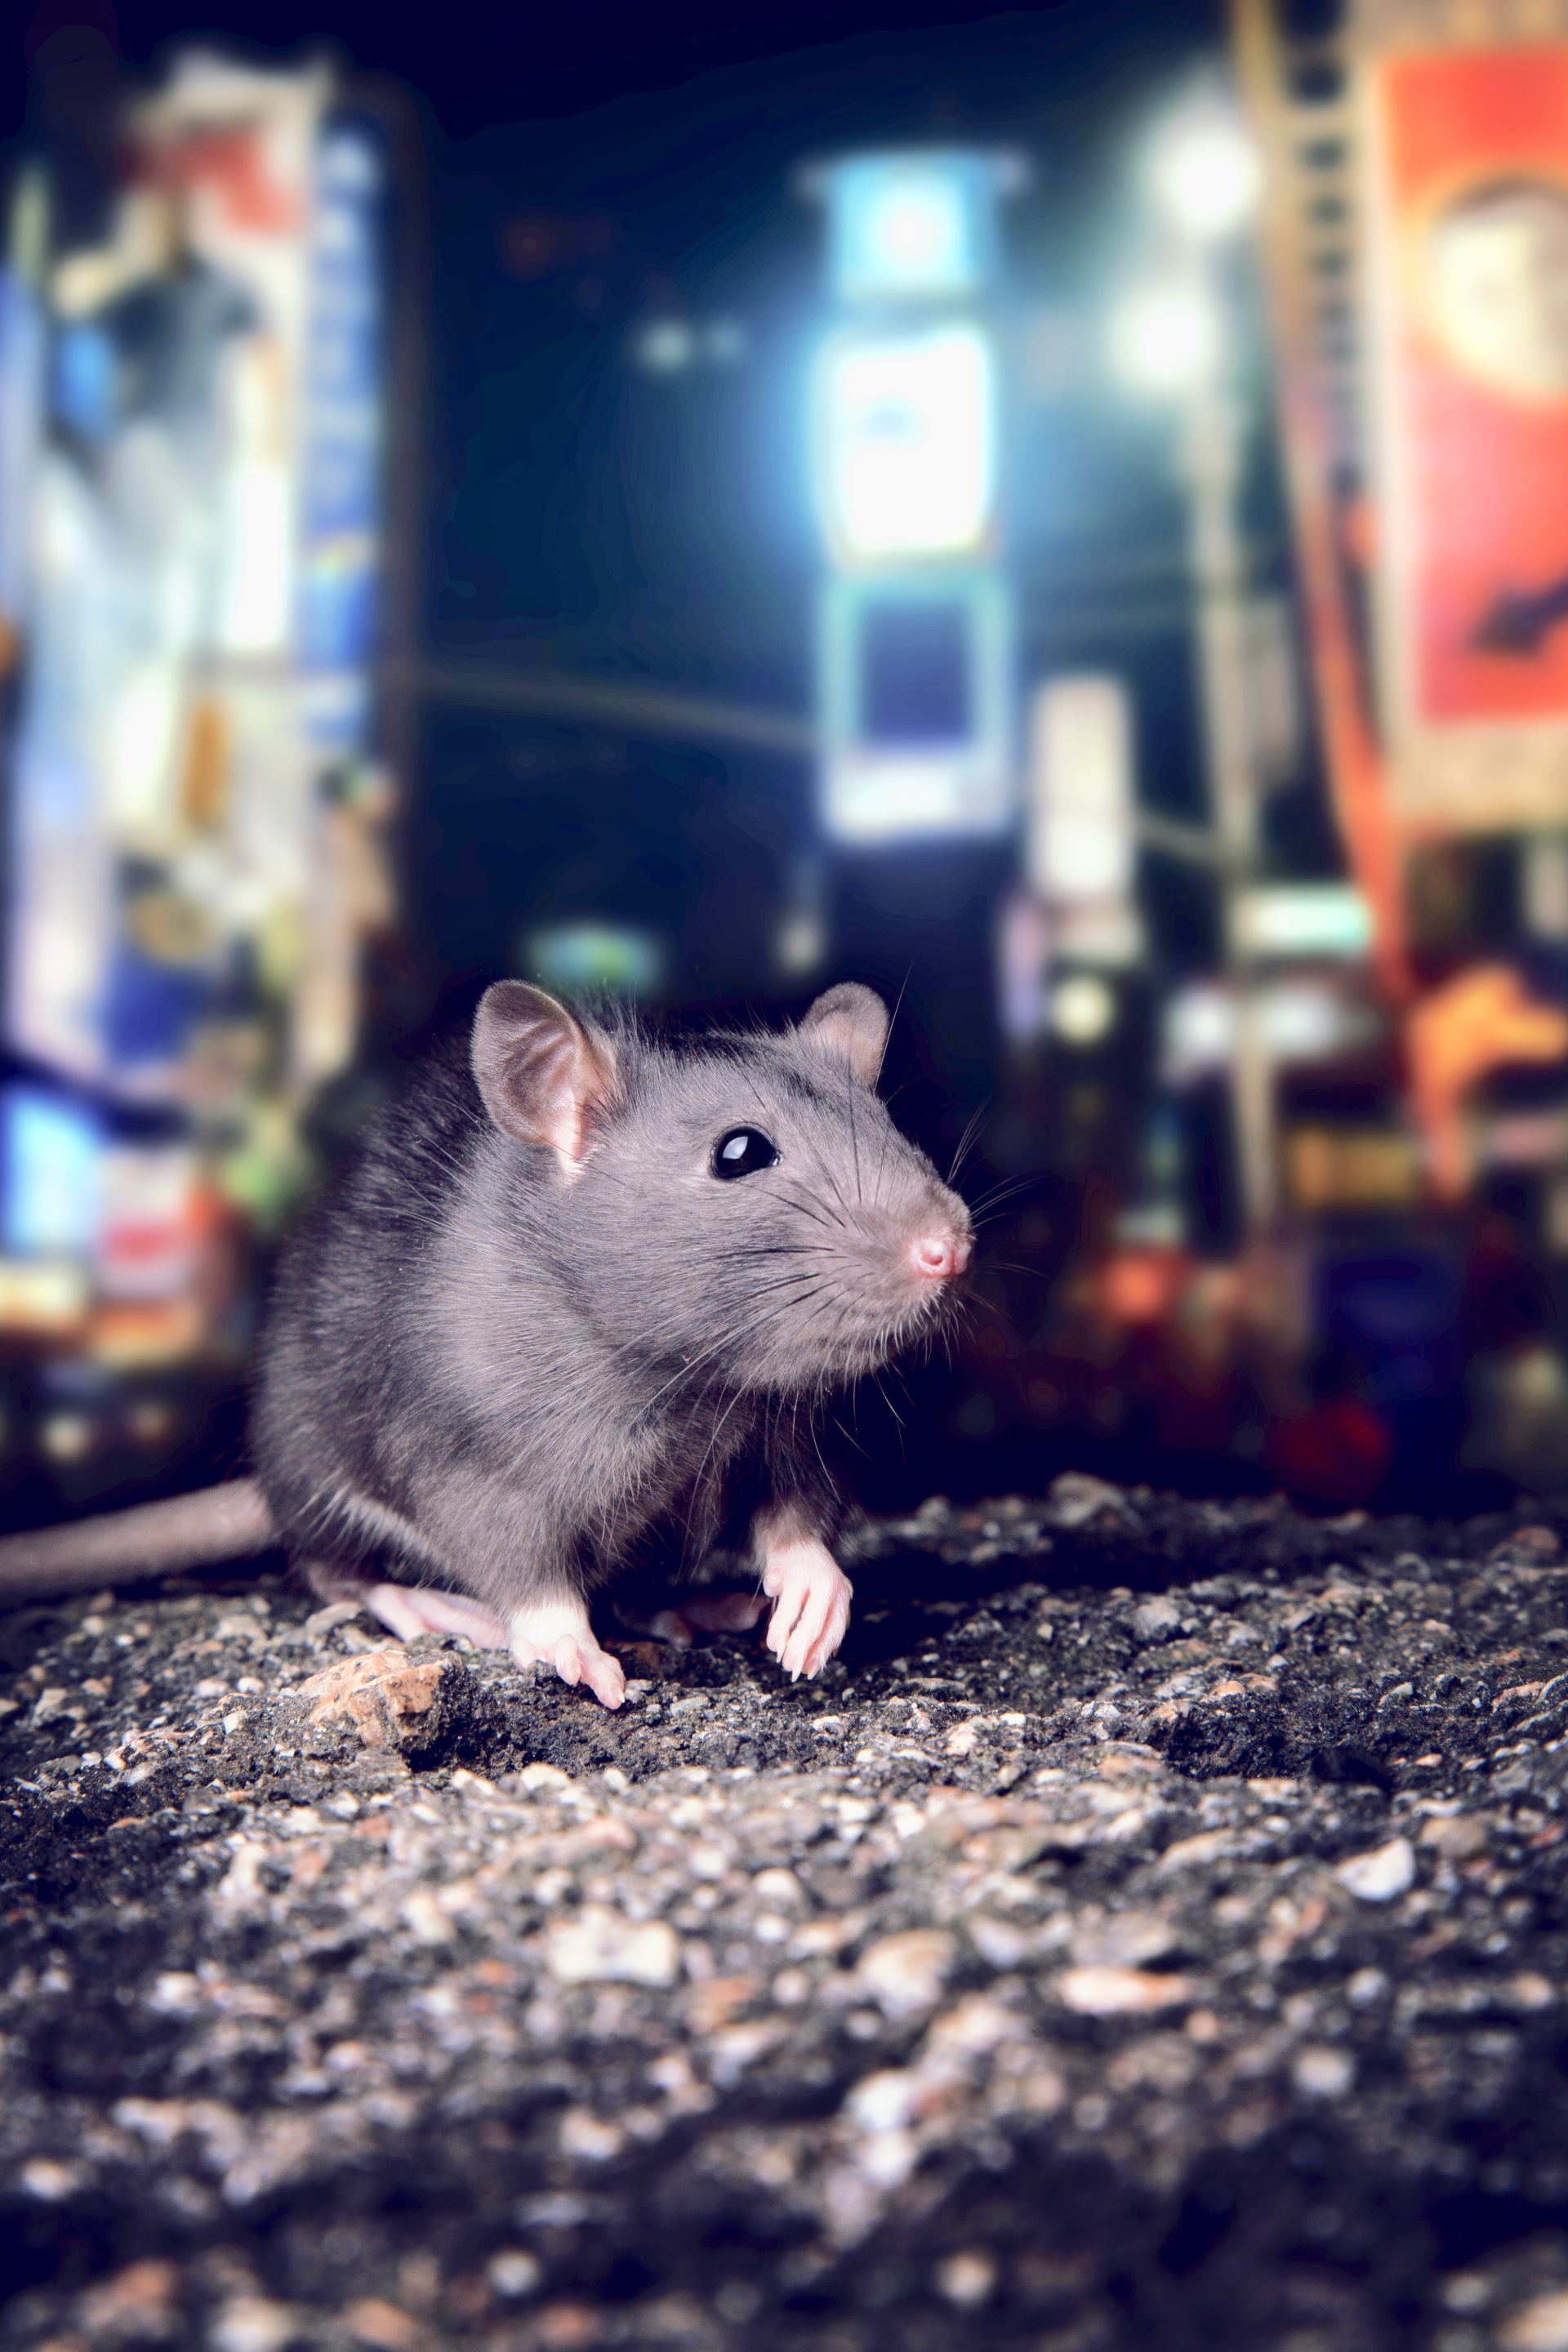 Solutions anti rat et souris 100% efficace - ProtectHome